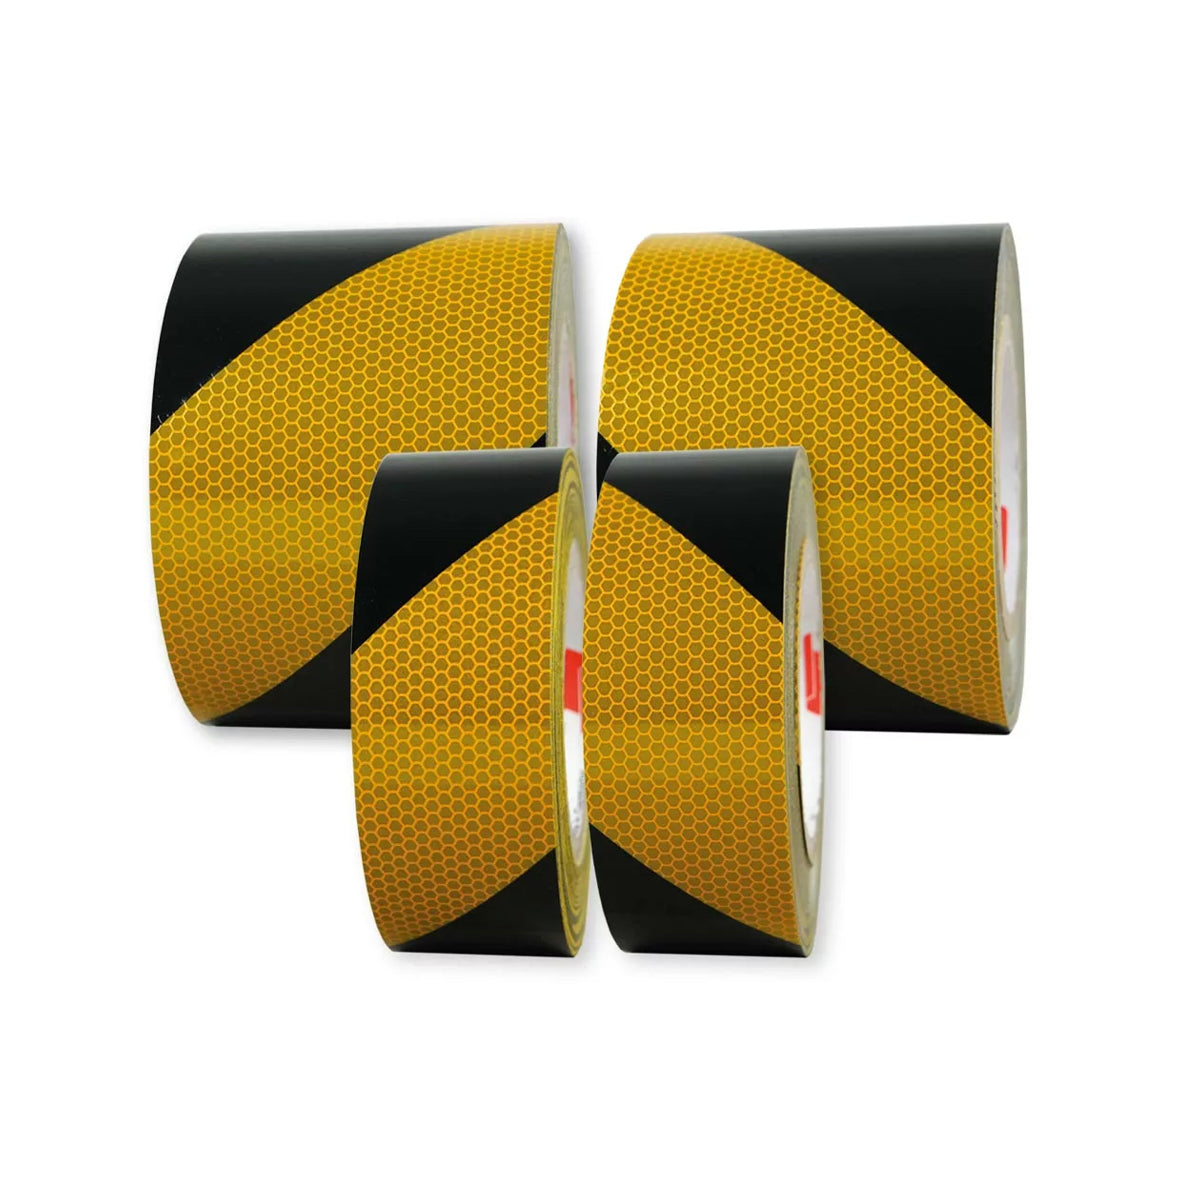 Warnmarkierungsband R2, für Fahrzeuge, R2, gelb-schwarz, 25 m x 50 mm, rechtsweisend